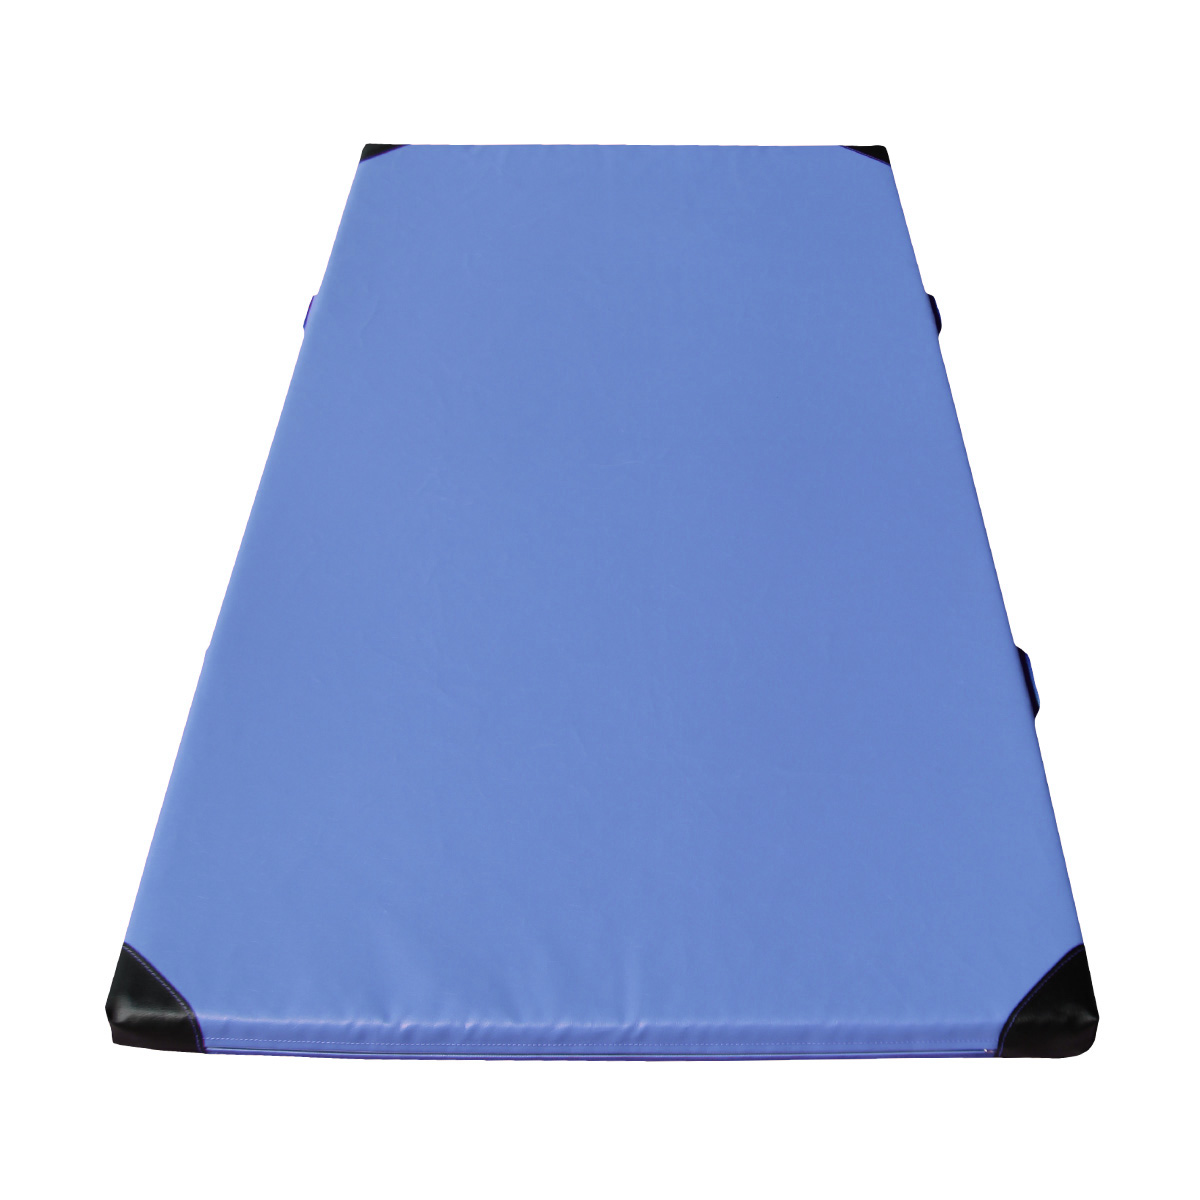  Žinenka MASTER Comfort Line R80 - 200 x 100 x 6 cm - modrá 